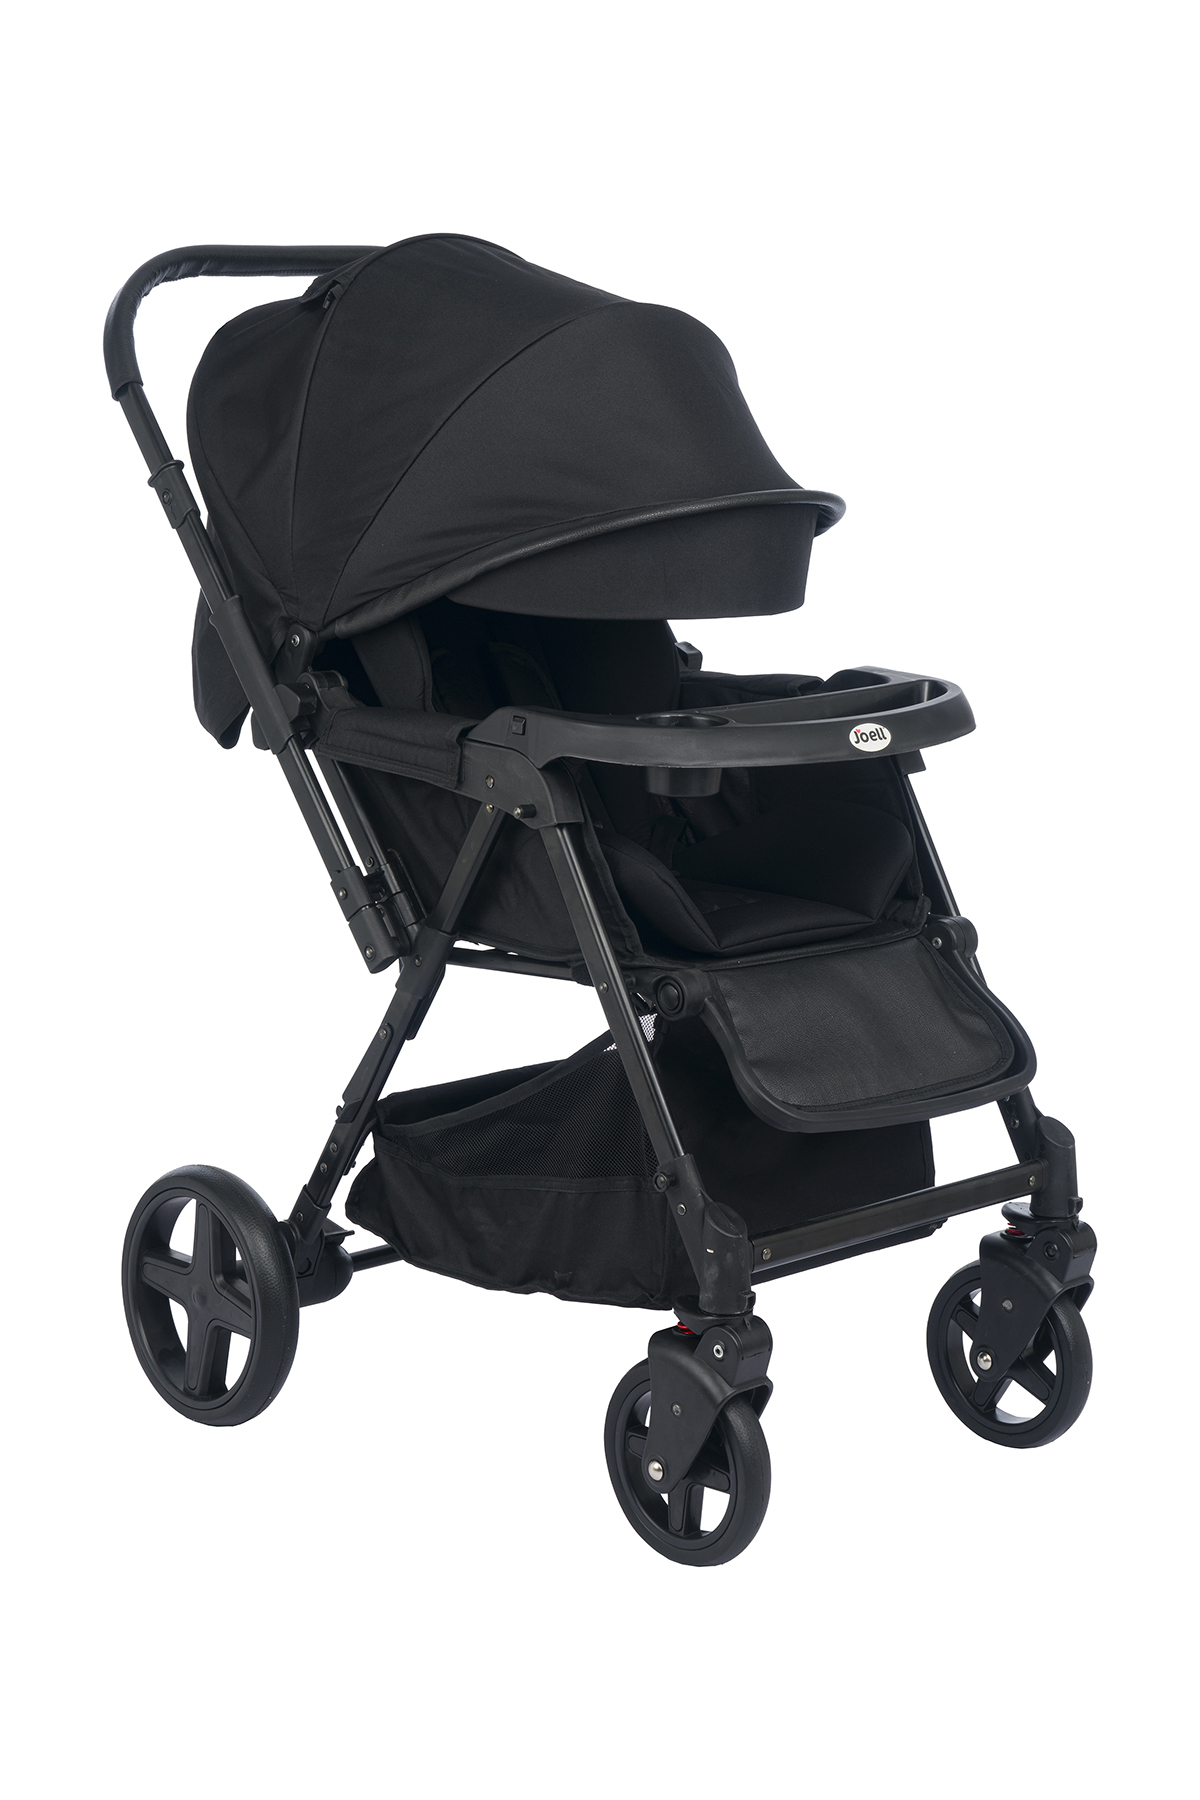 Joell Trendy Çift Yönlü Bebek Arabası Siyah